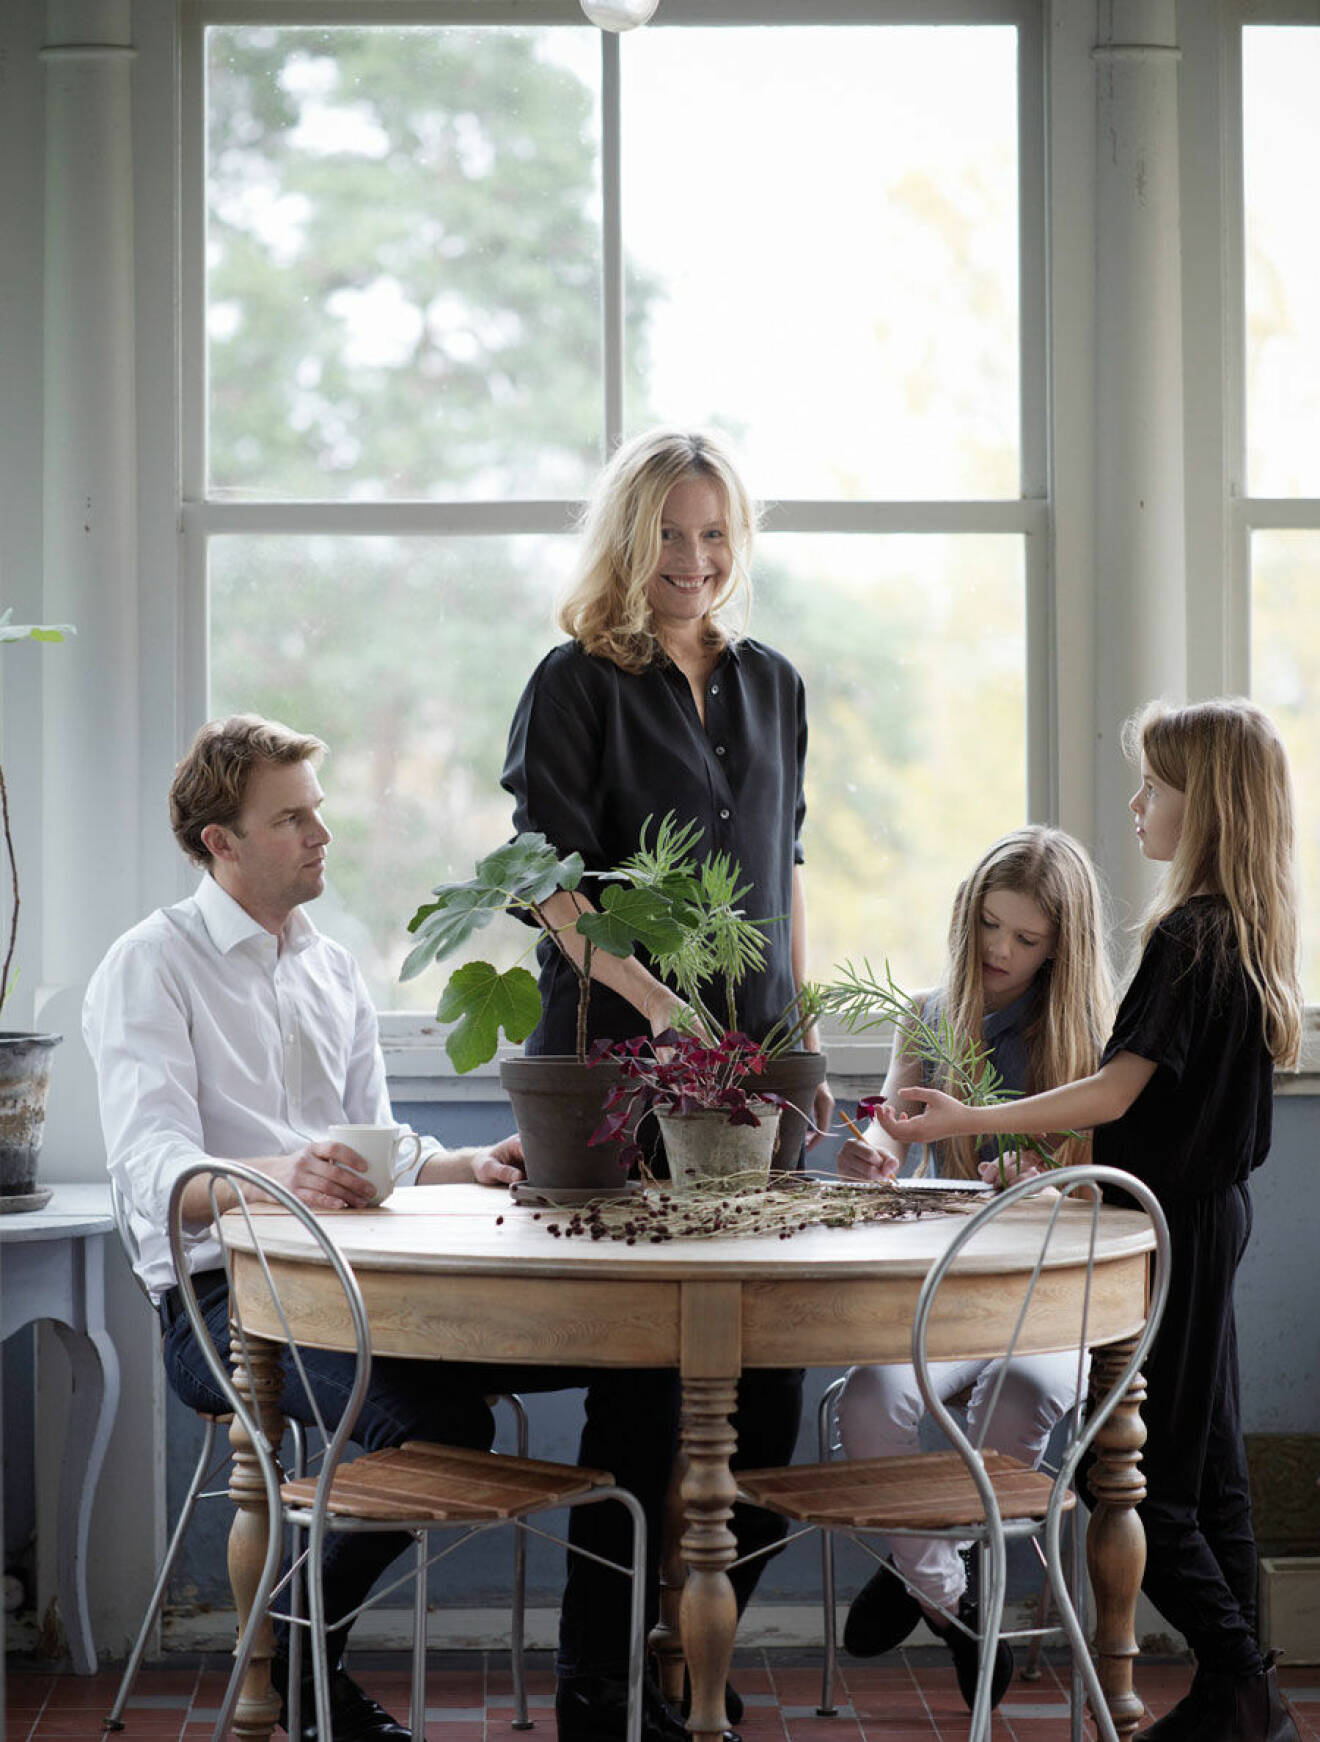 Anna Lenskog och Petter Belfrage med familj